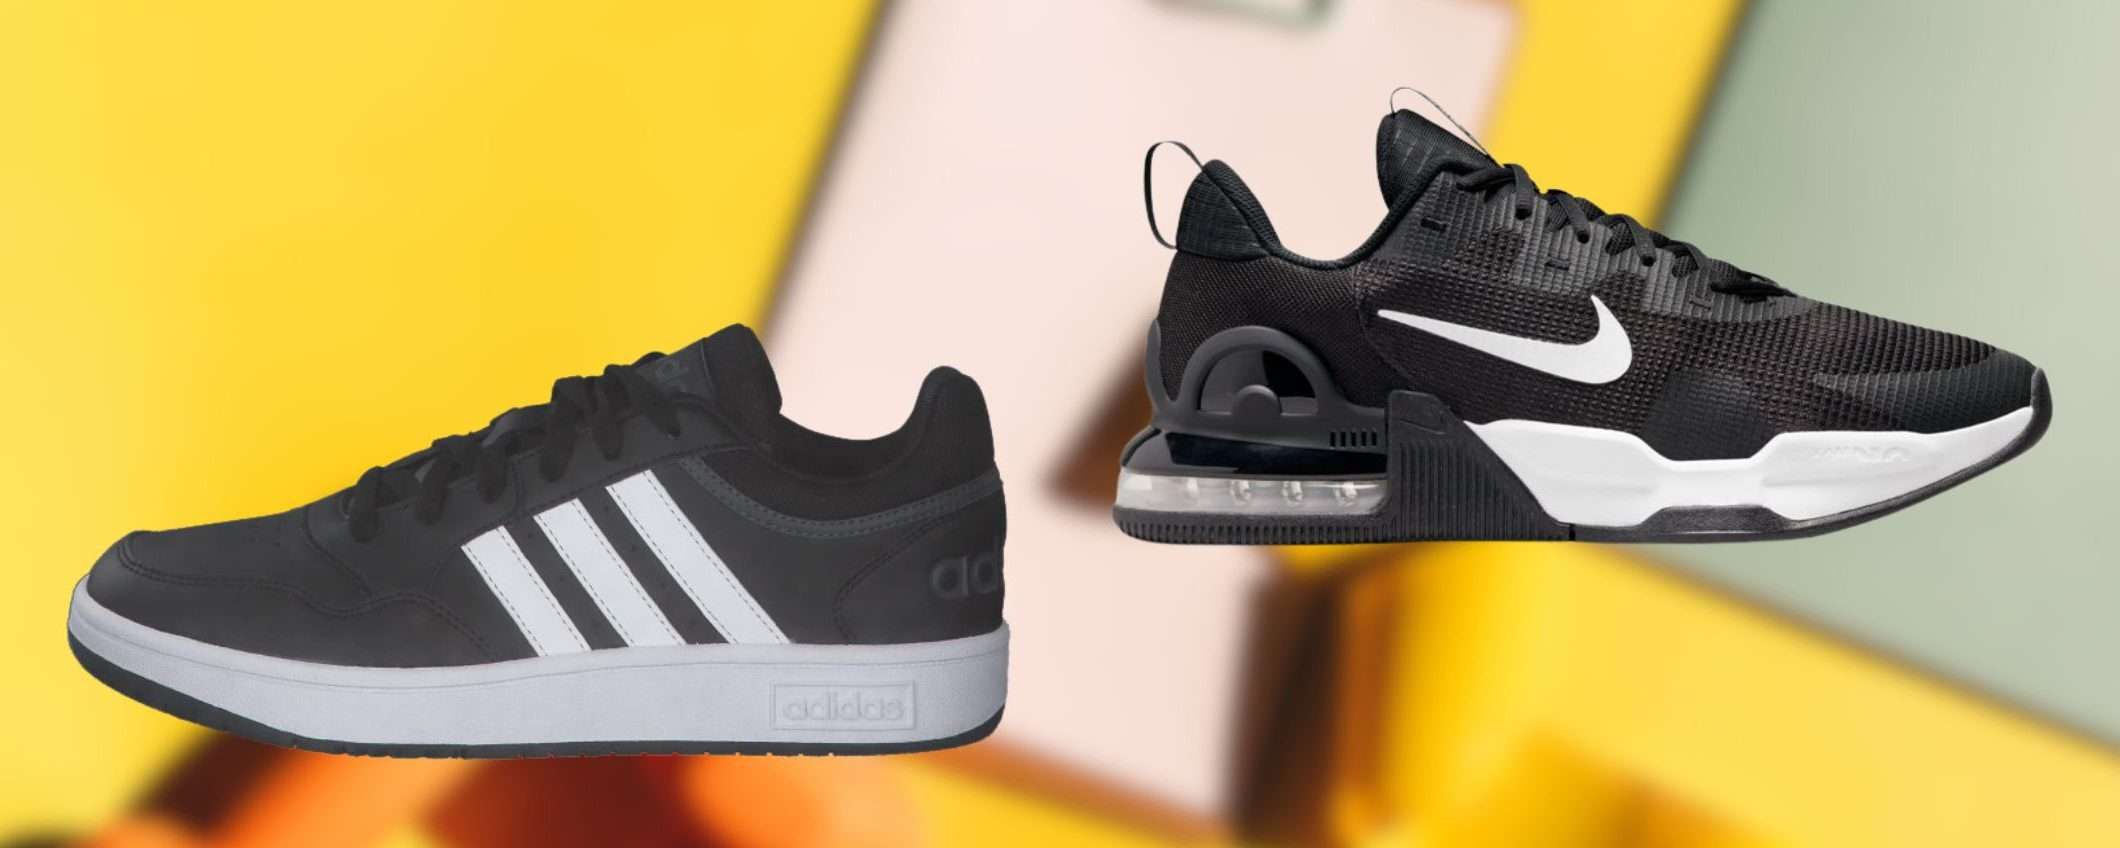 Amazon SPAVENTA Globo: scarpe Adidas e Nike a prezzi da SVUOTATUTTO